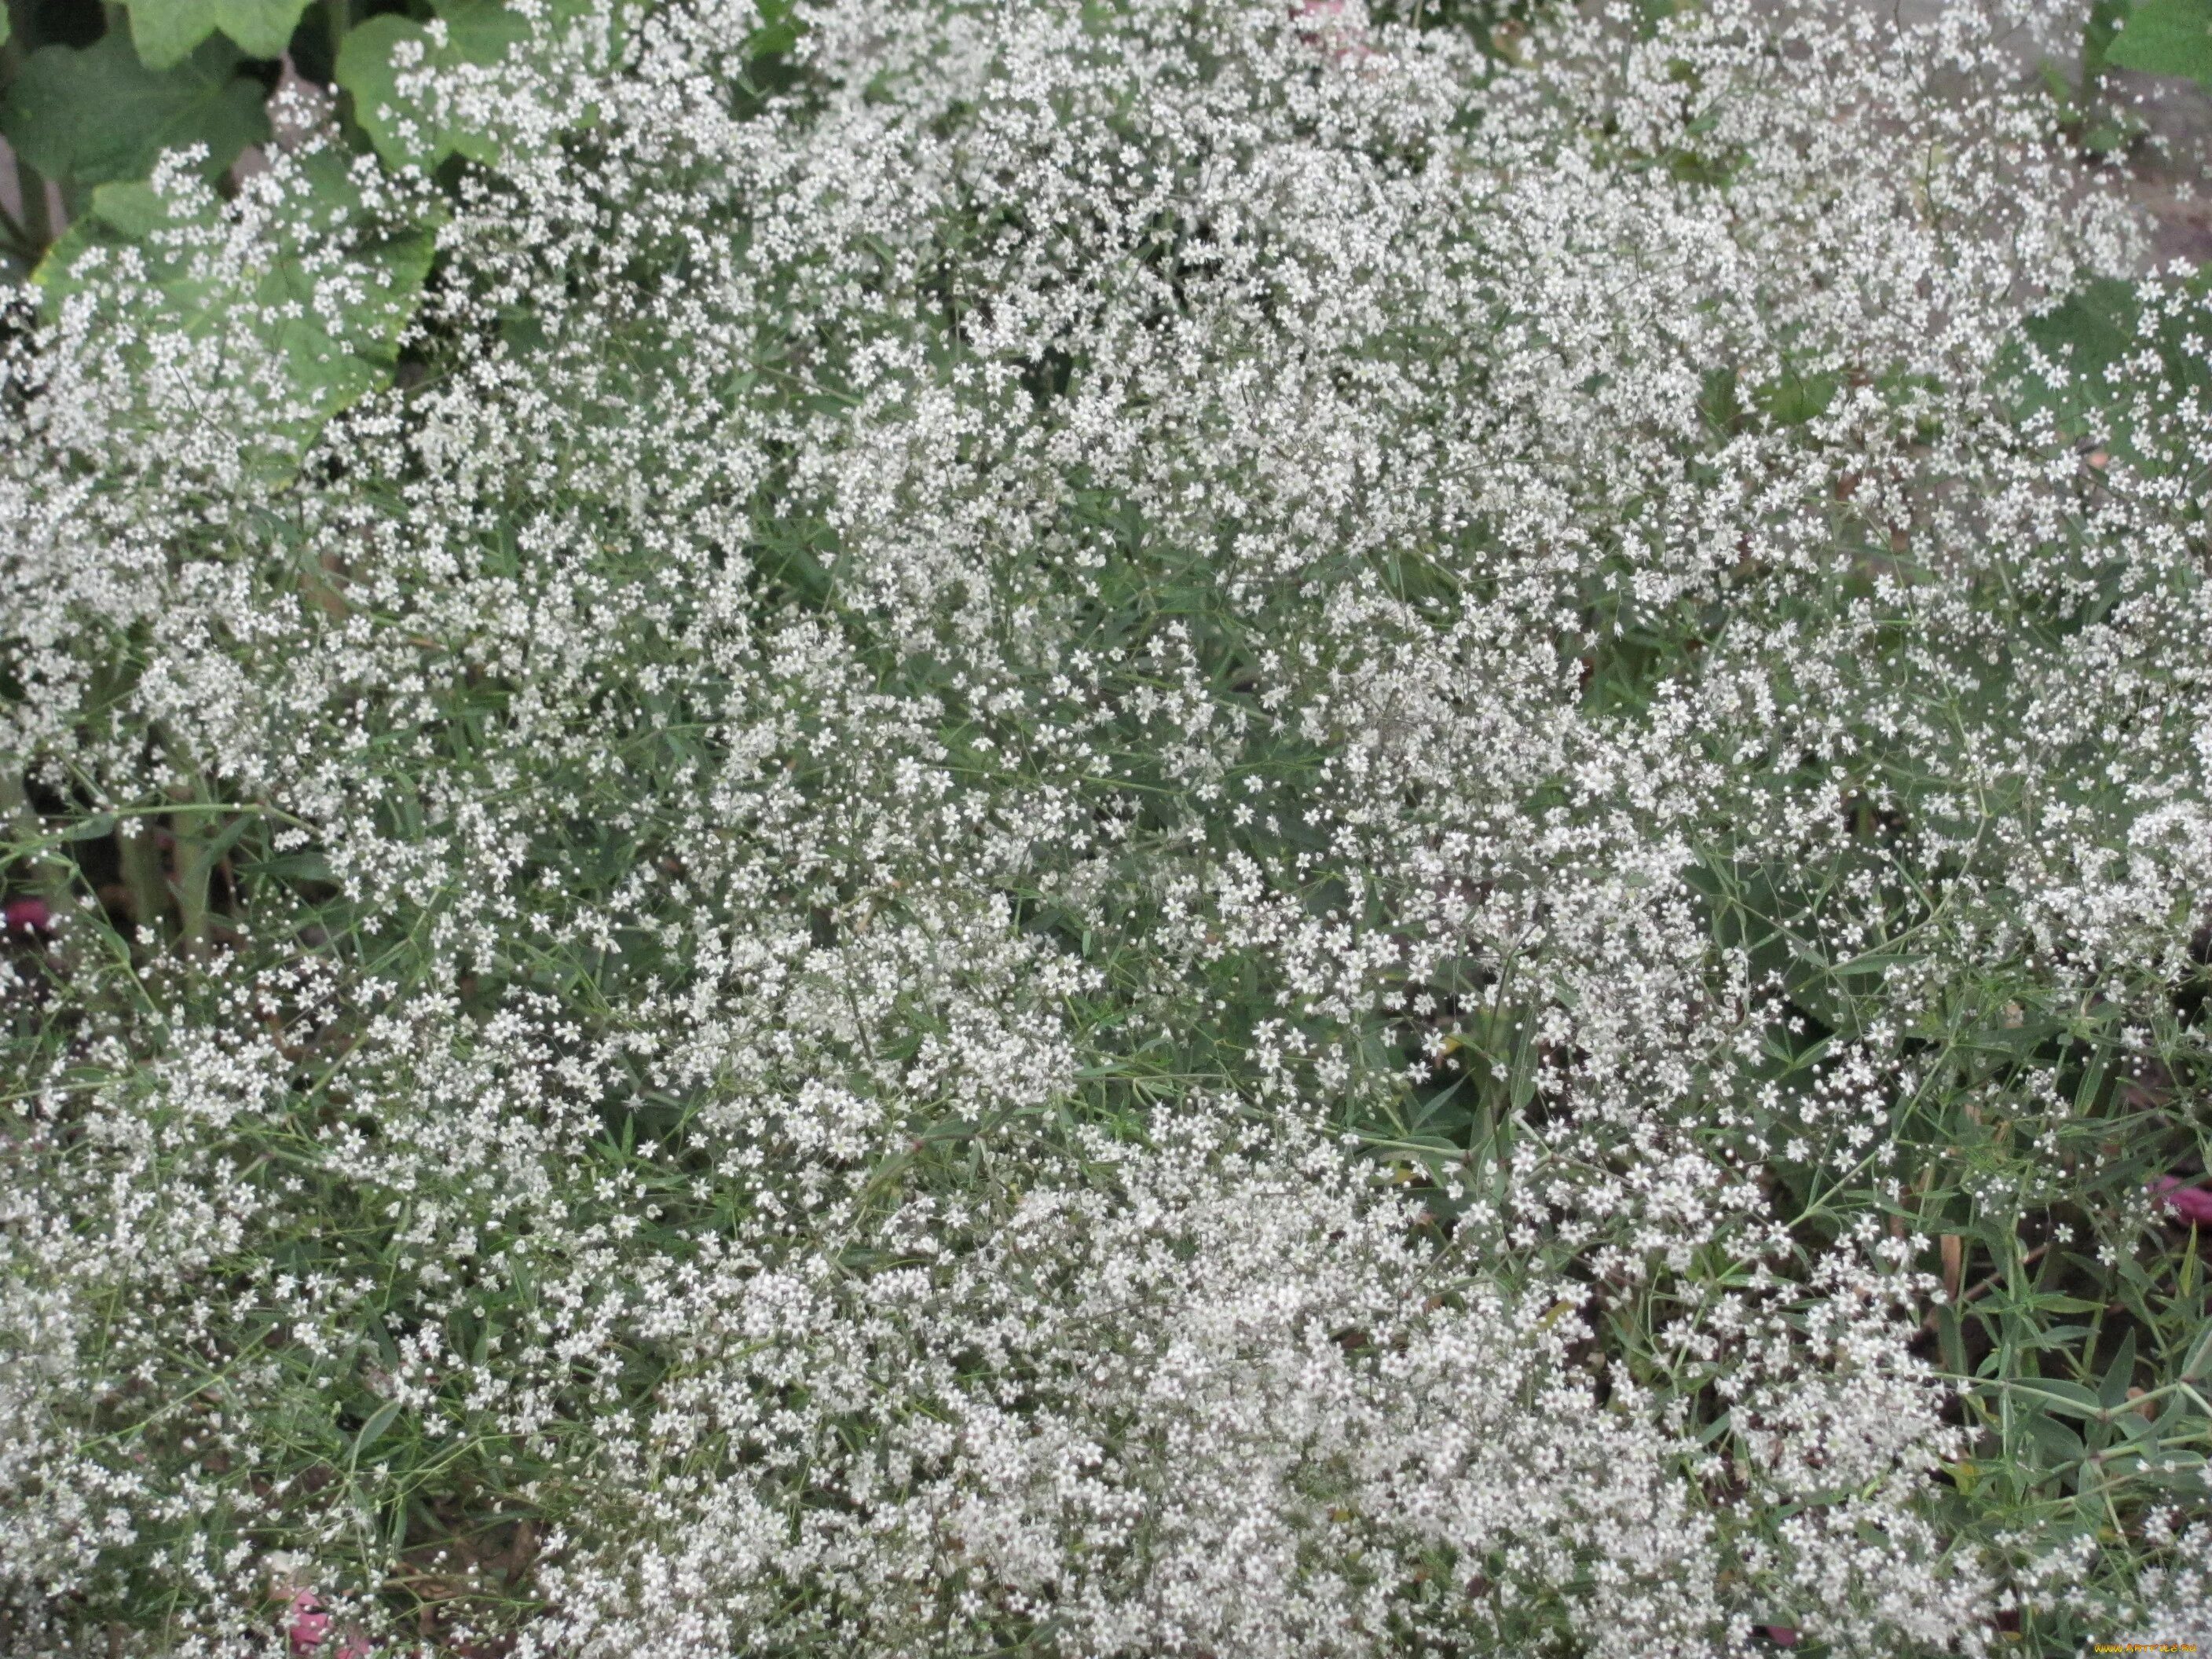 Название цветов мелкие белого цвета. Гипсофила соцветие. Мелкие белые цветочки. Растение с мелкими белыми цветочками. Мелкие белые цветы.